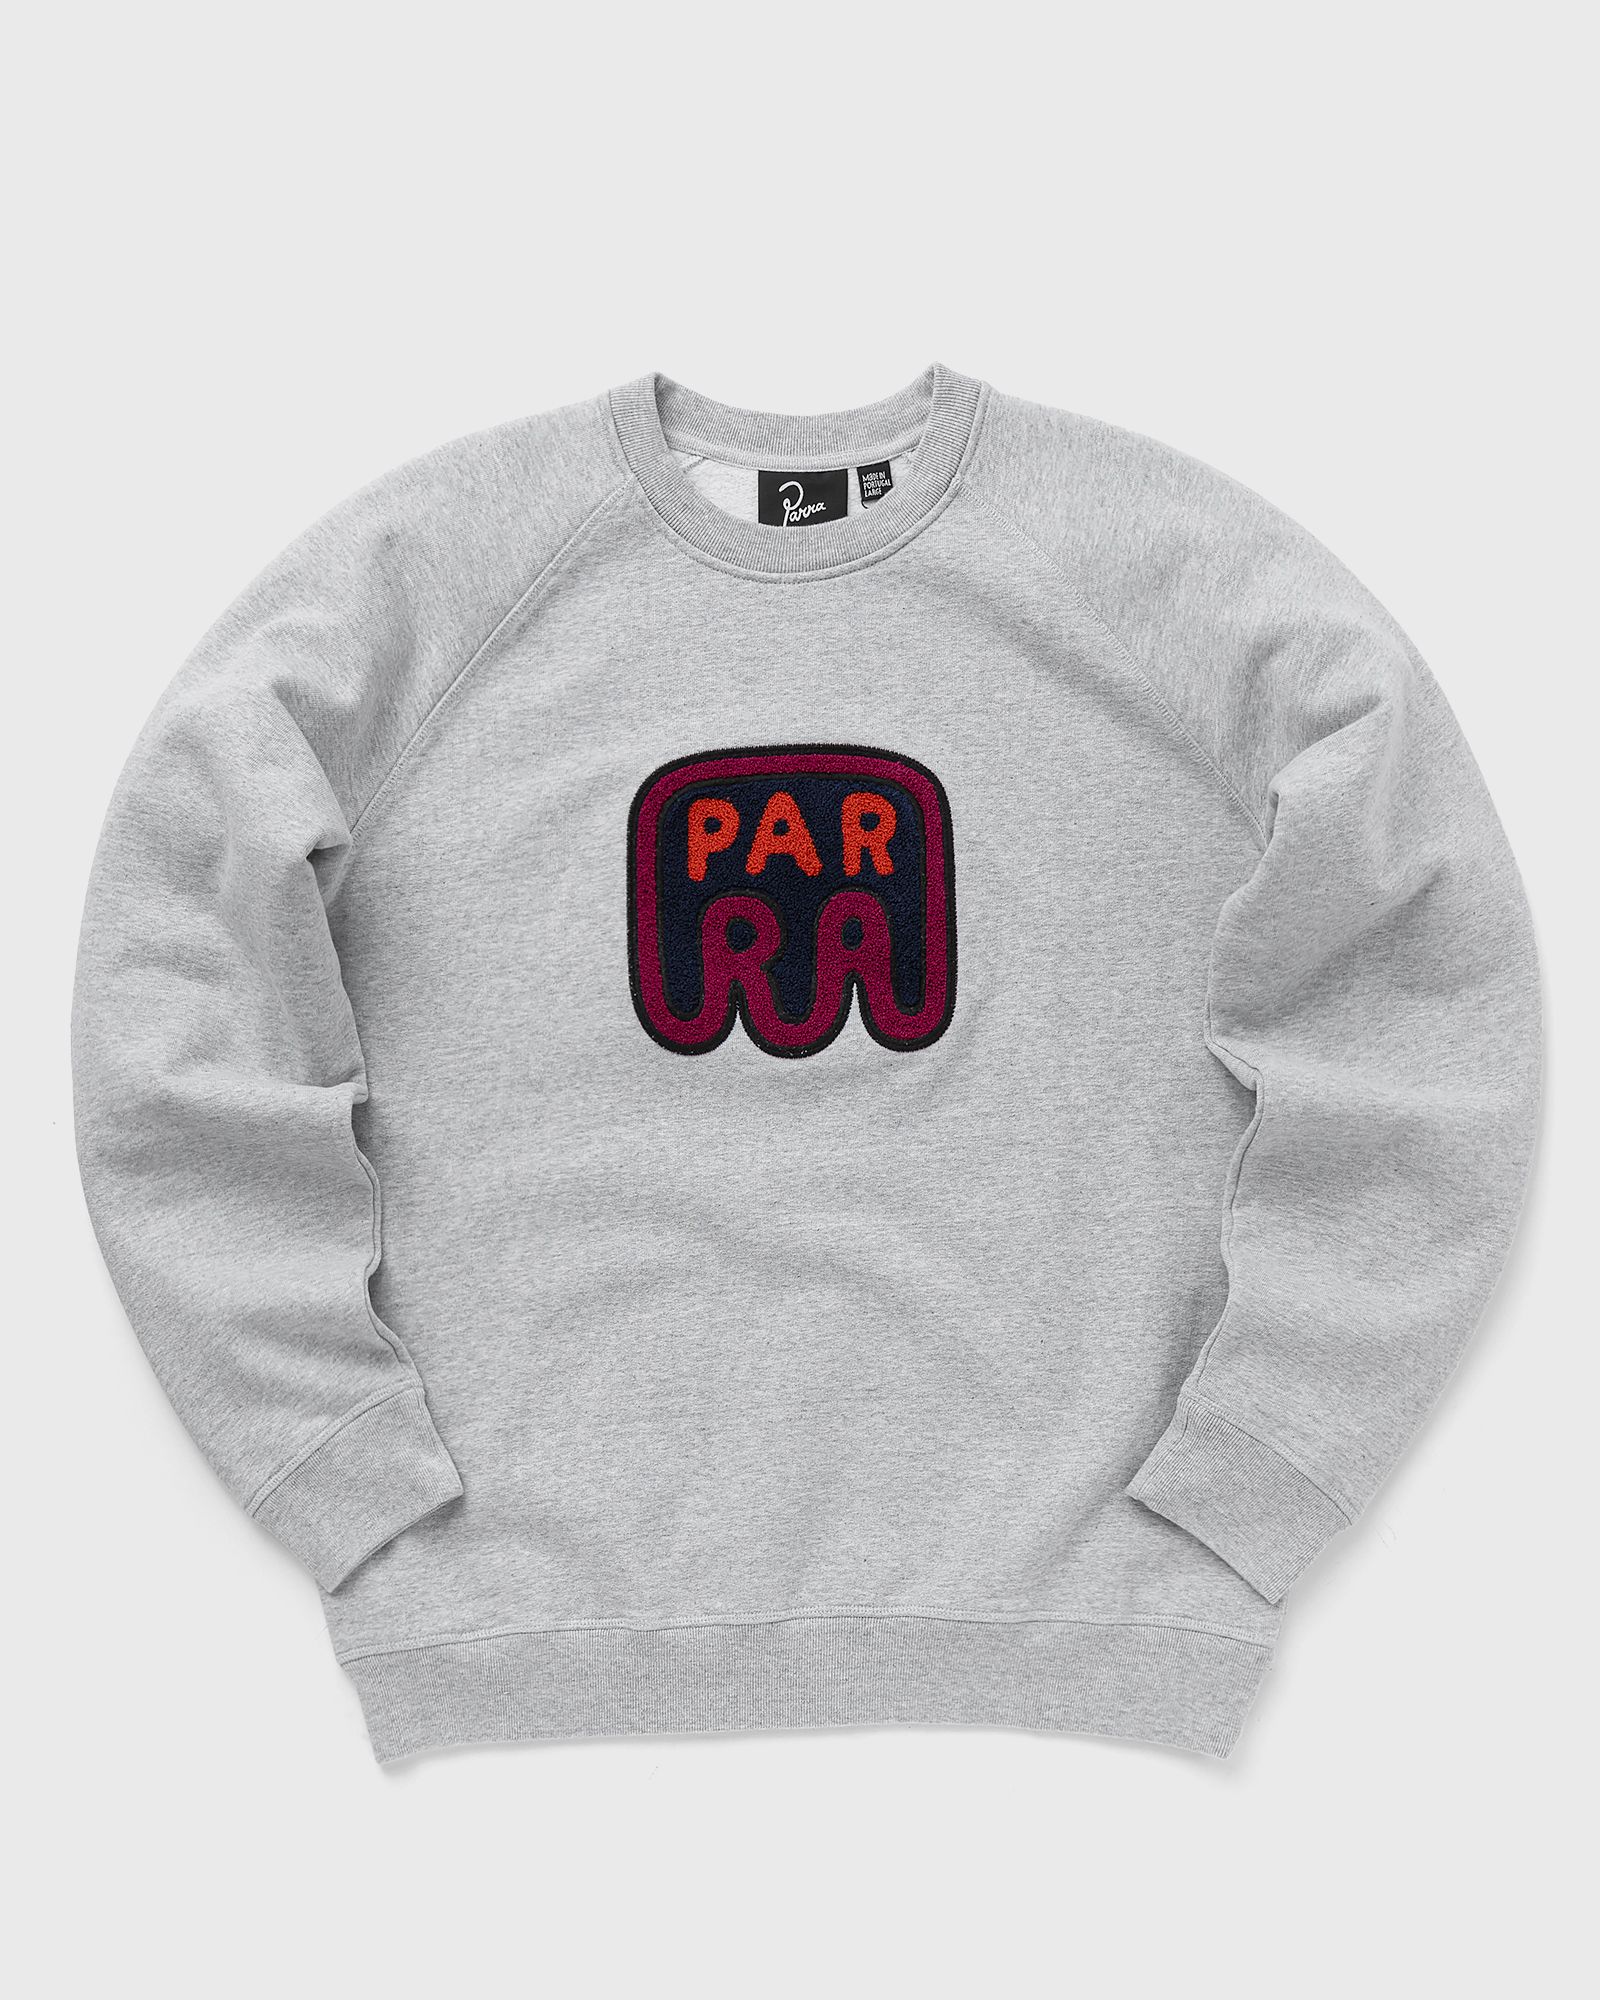 By Parra - fast food logo crew neck sweatshirt men sweatshirts grey in größe:xl